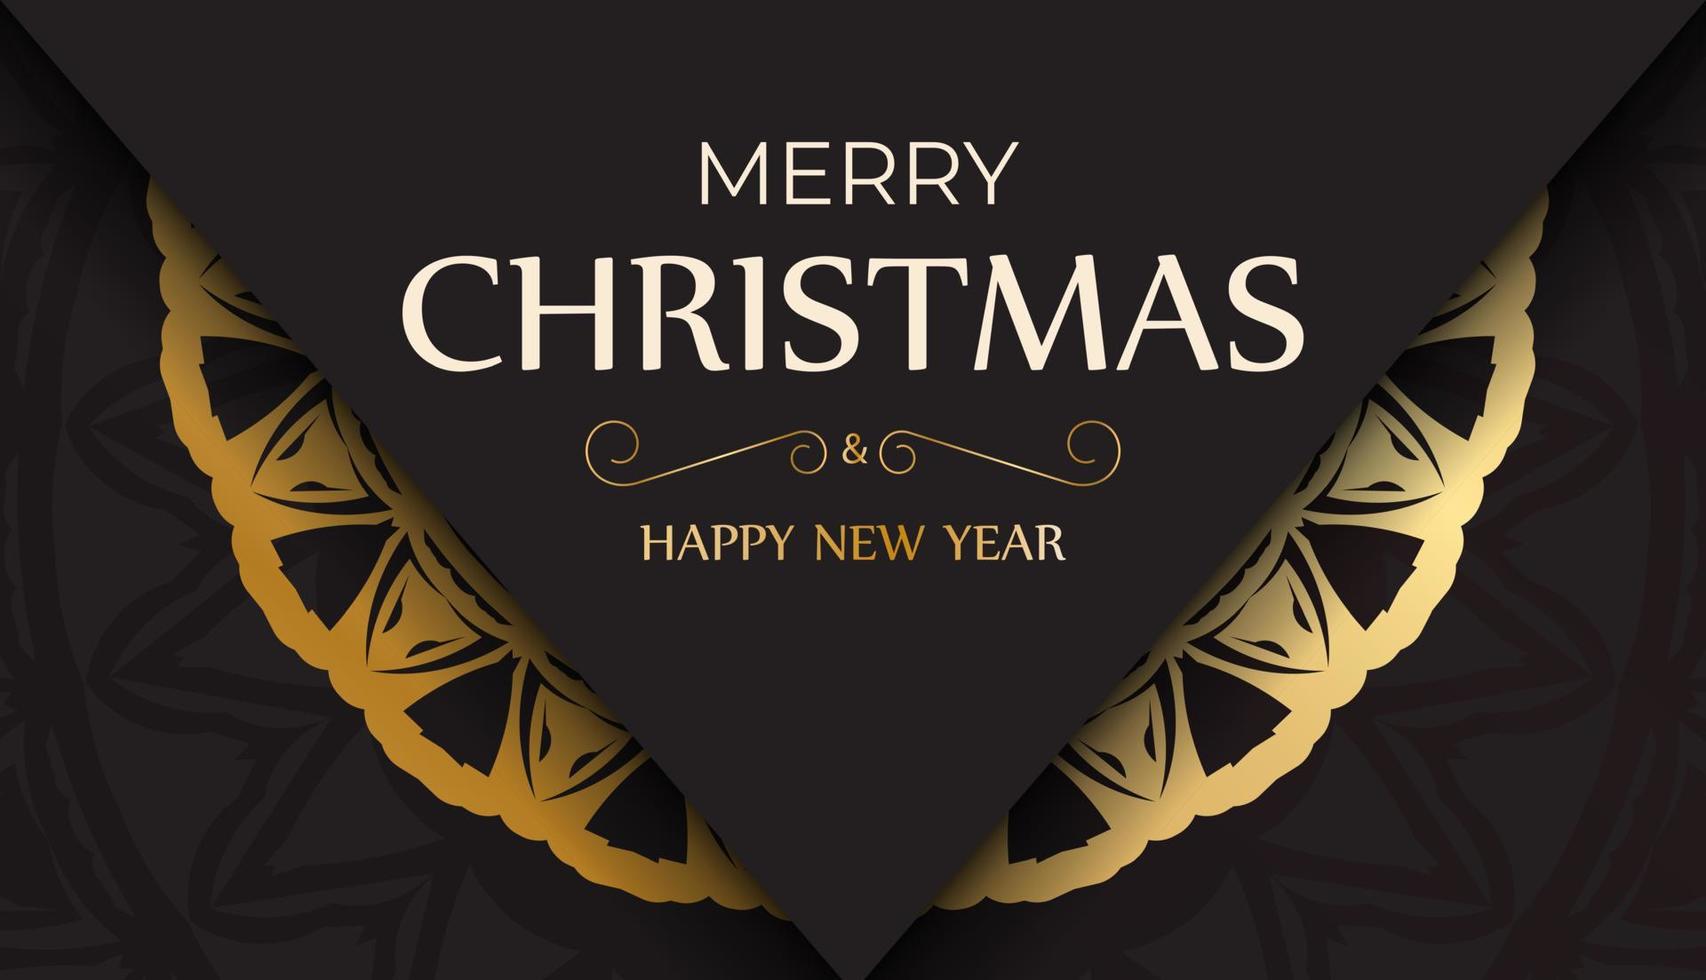 tarjeta de felicitación feliz navidad y feliz año nuevo en color negro con patrón dorado. vector